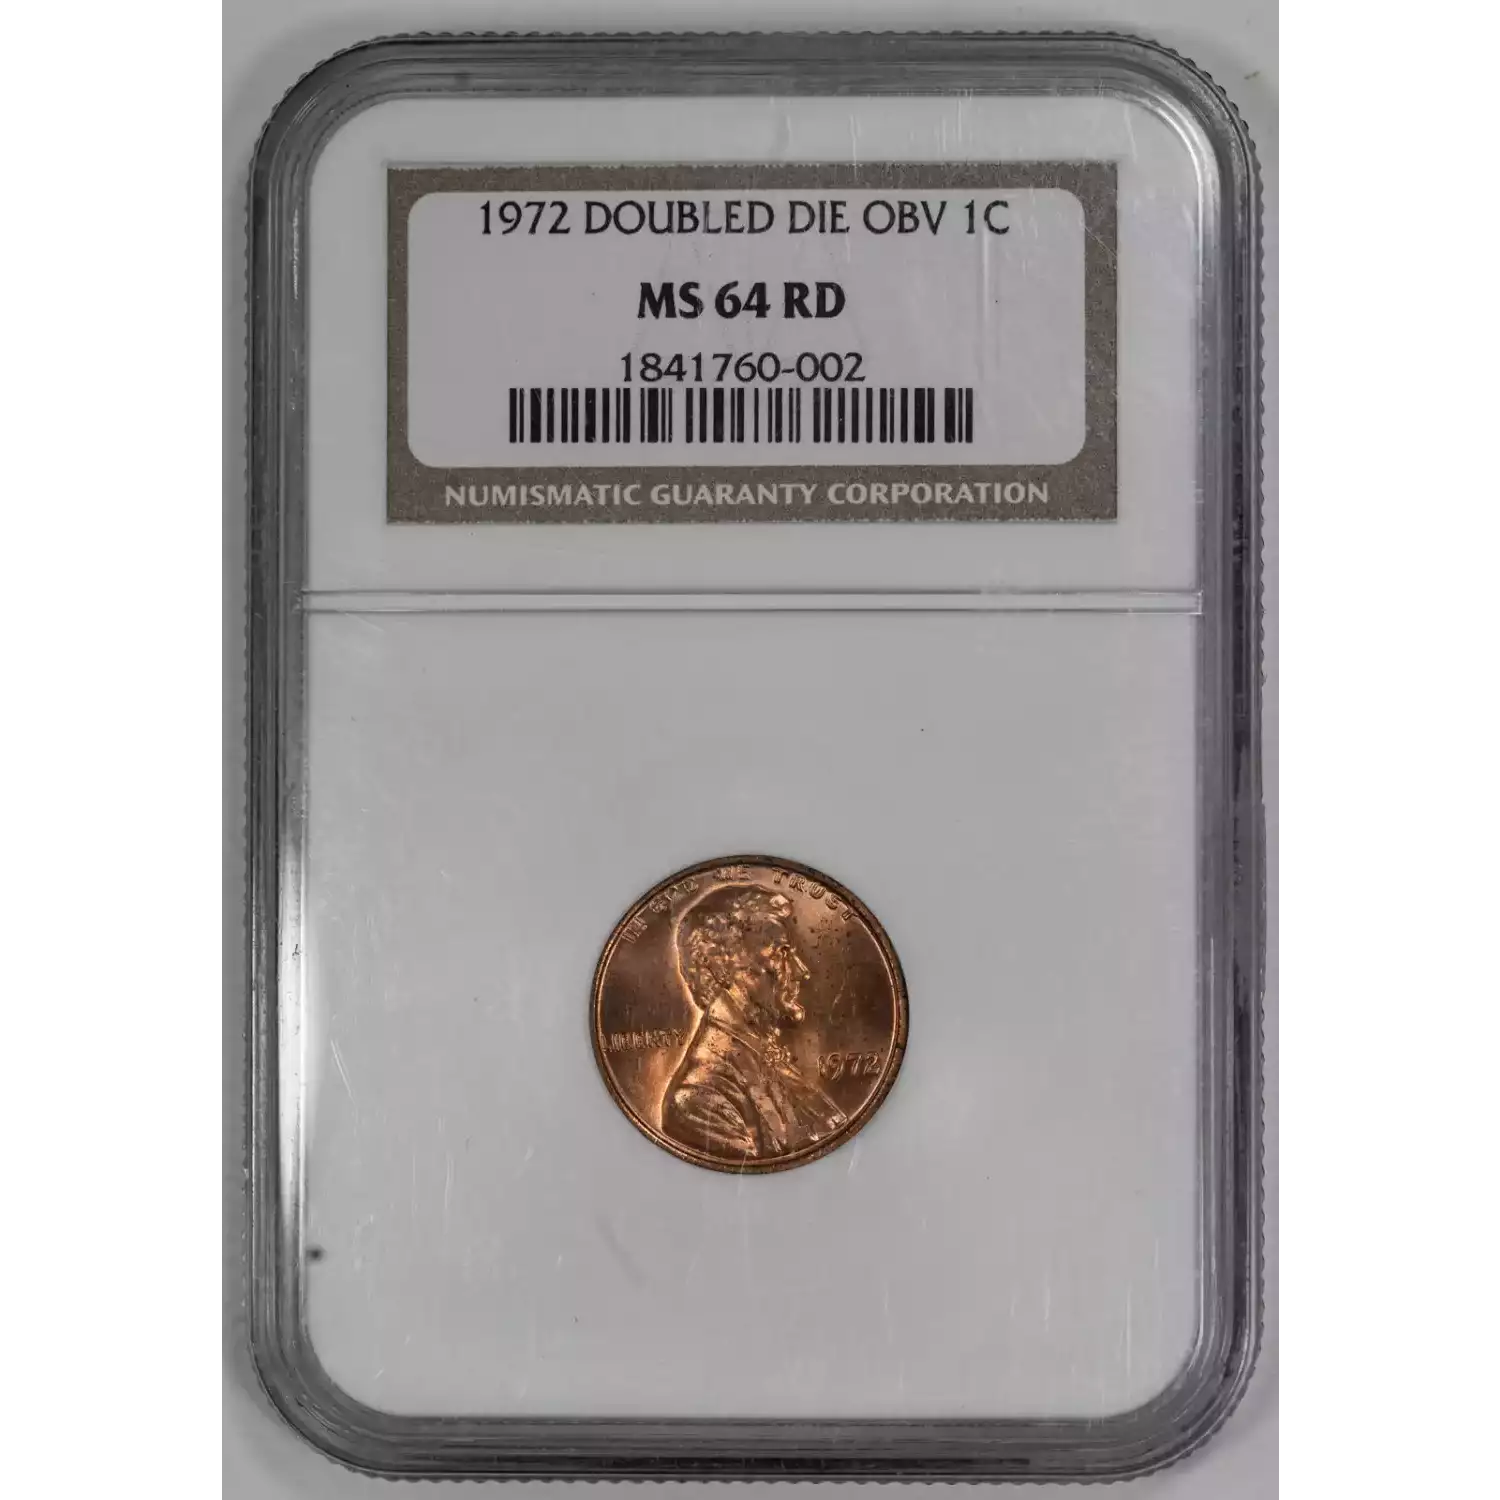 Small Cents-Lincoln, Memorial Reverse 1959-2006 -Copper